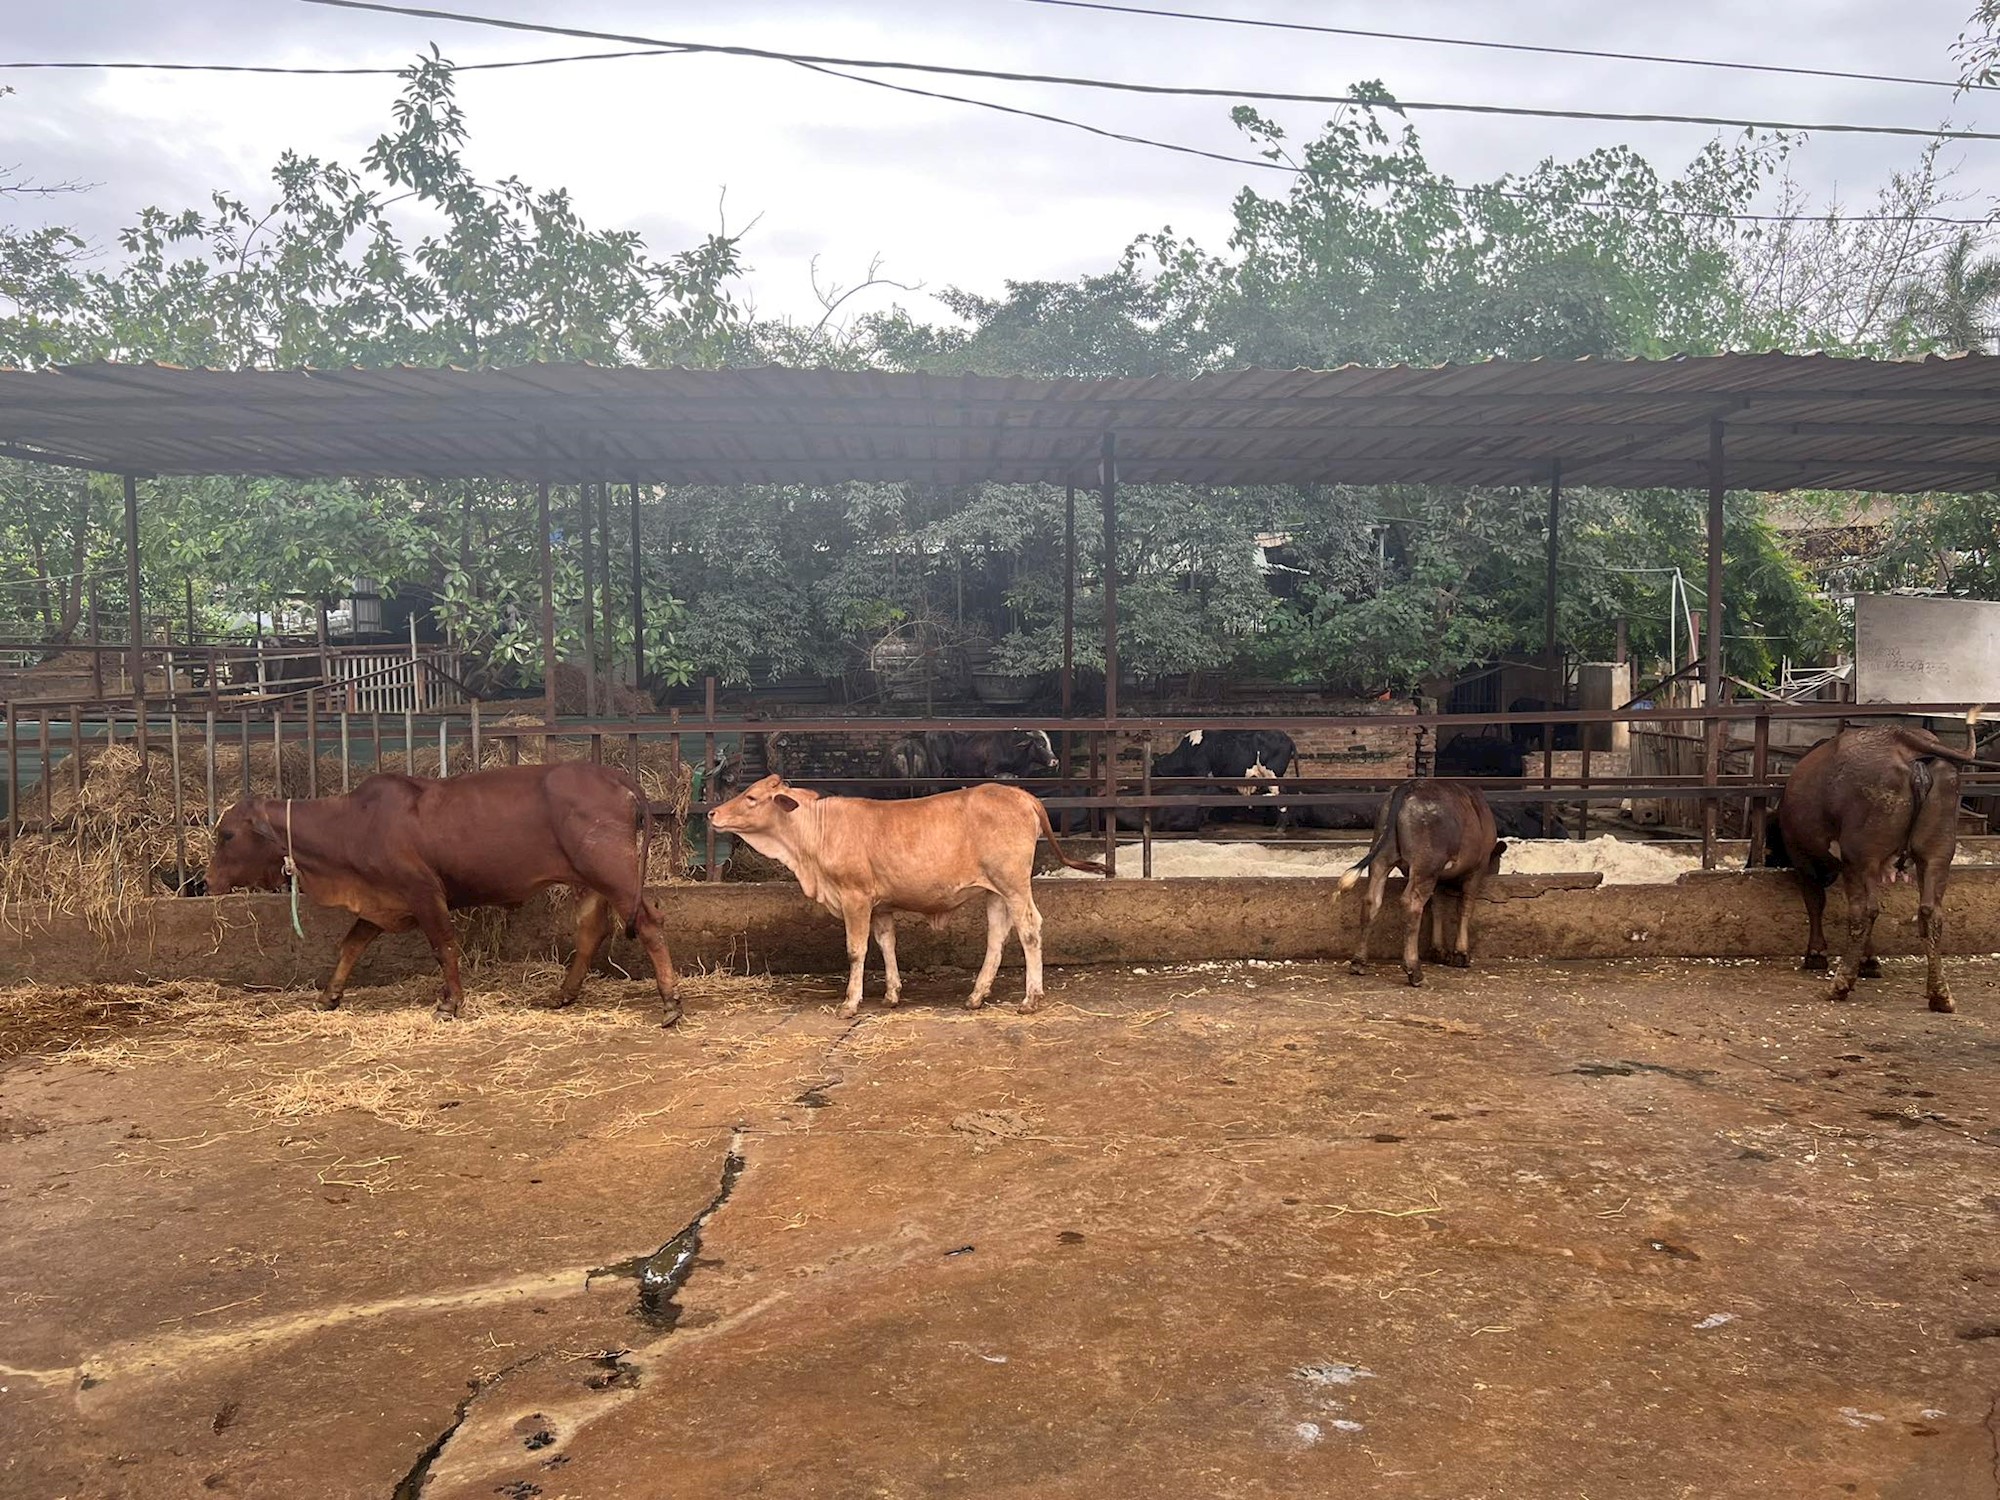 Quây rào, lợp lán nuôi bò khu vực gầm cầu Thăng Long